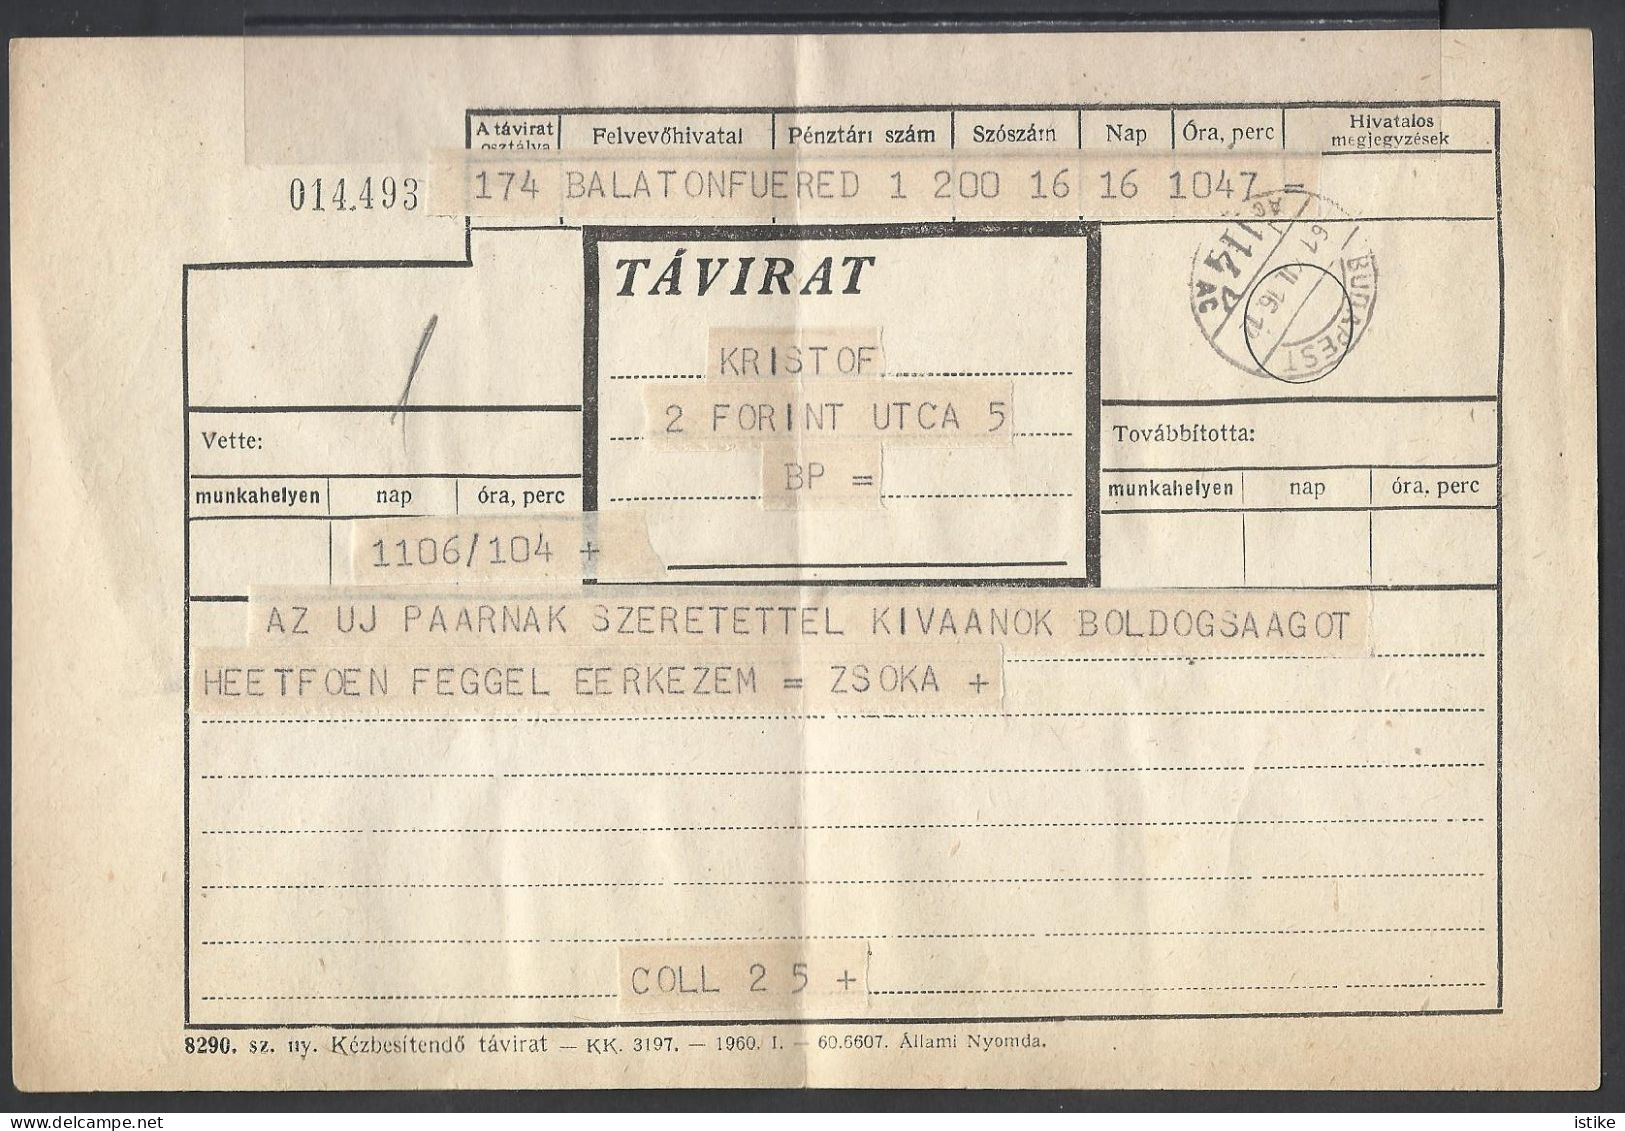 Hungary, Telegram, 1961 - Telegrafi